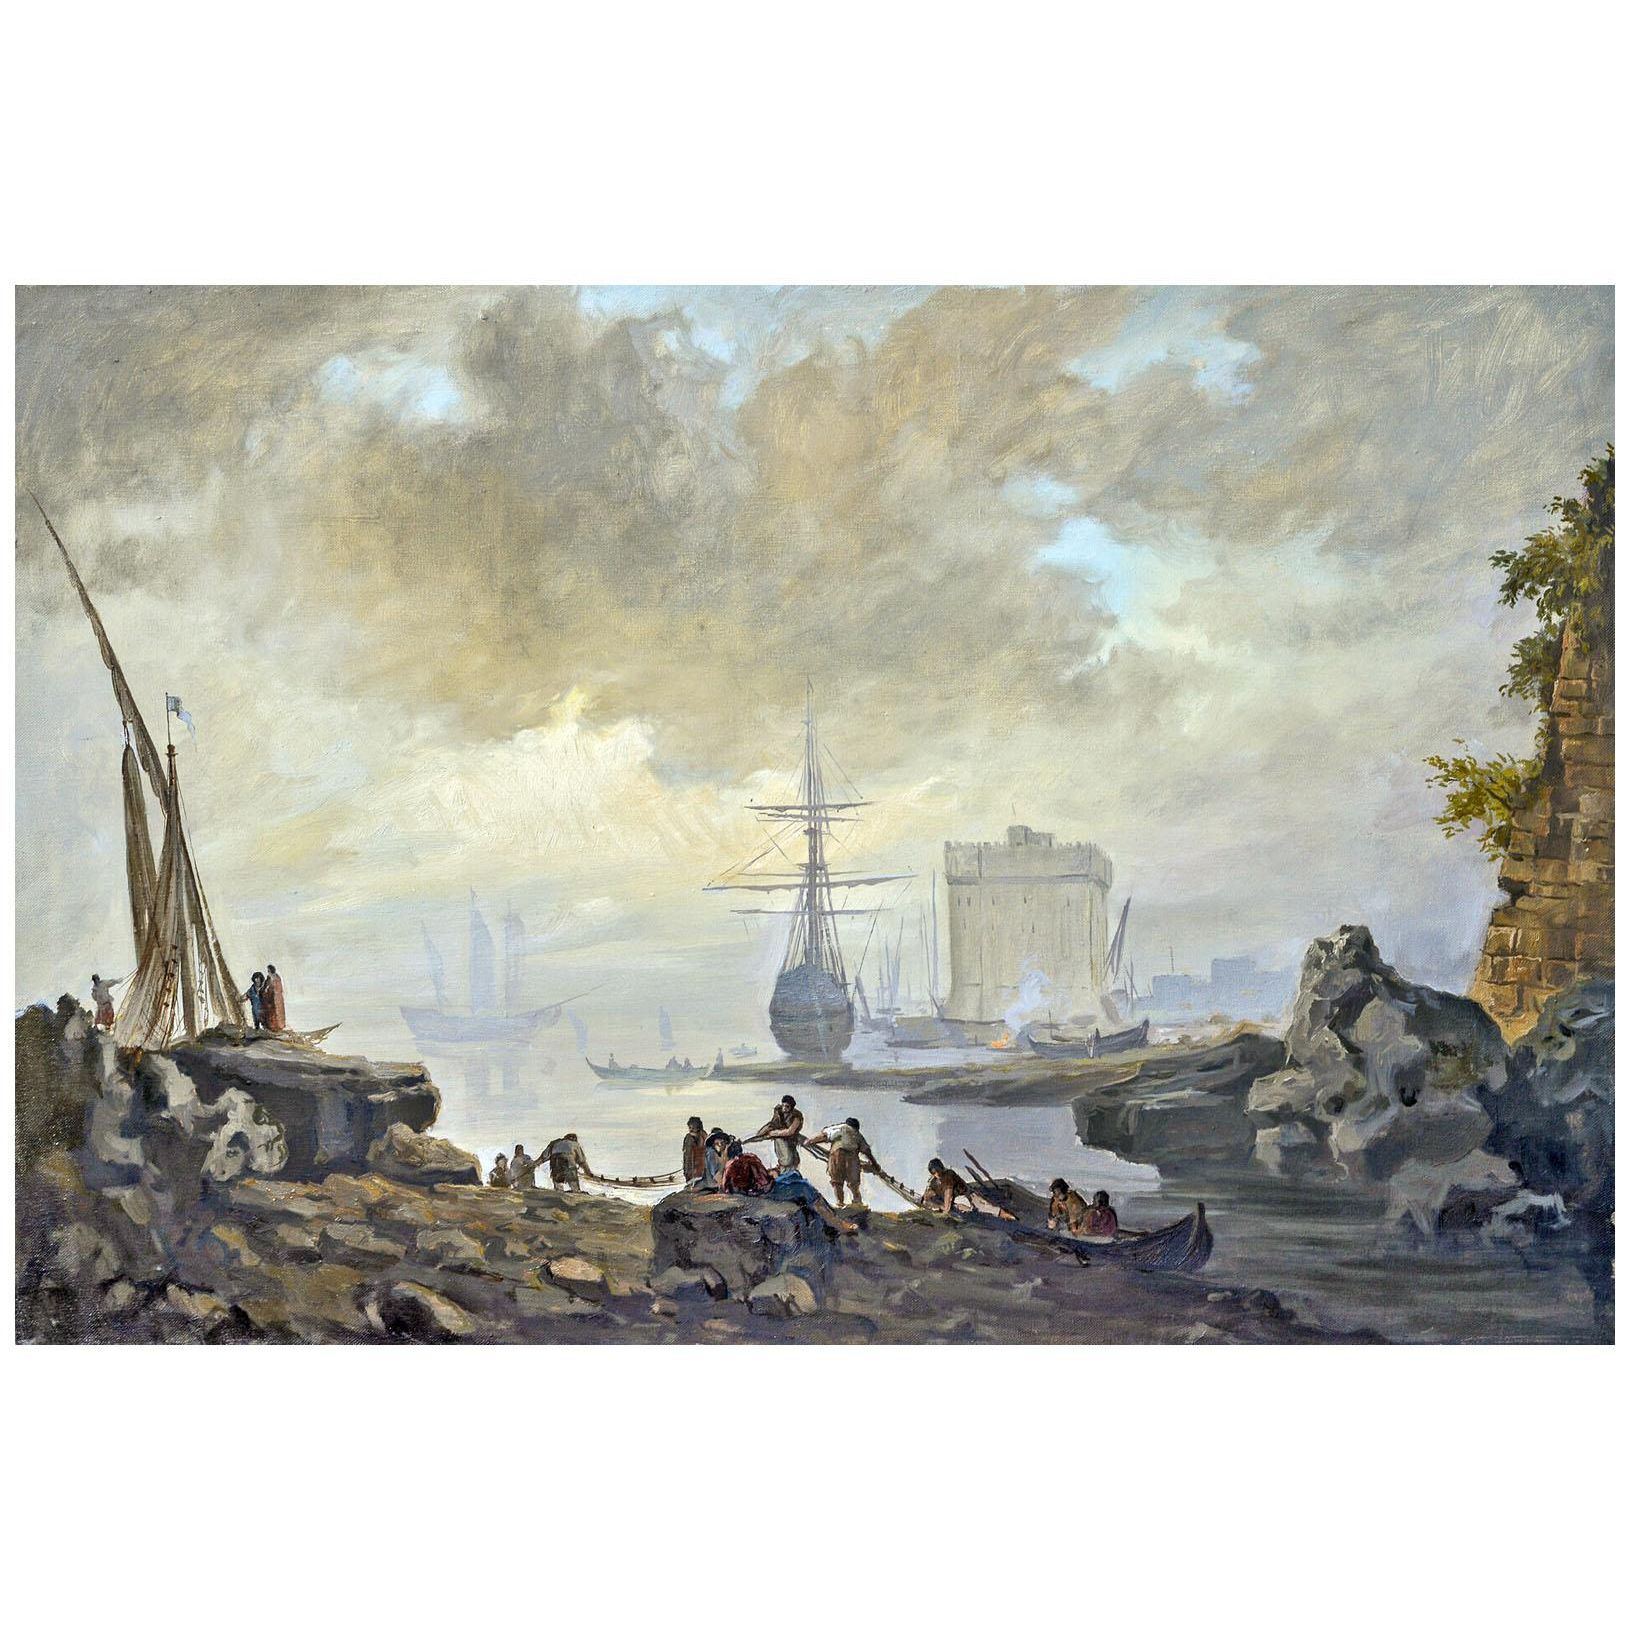 Joseph Vernet. Vue marine. La brume. 1745. Pushkin Museum